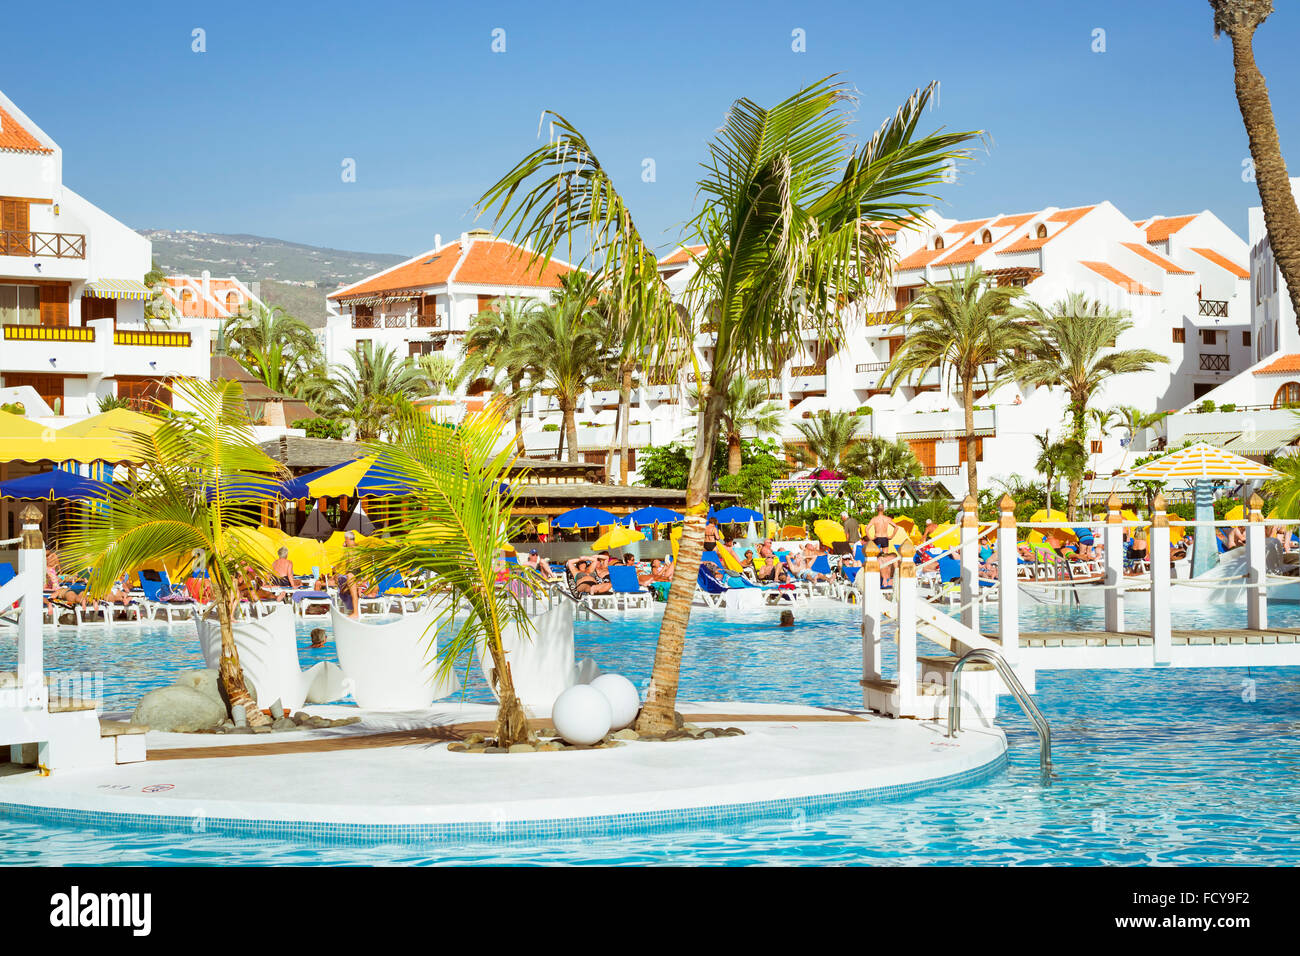 TENERIFE, Spagna - 17 gennaio 2013: piscina, ristorante all'aria aperta e la spiaggia di hotel di lusso, Playa de Las Americas, Tenerif Foto Stock